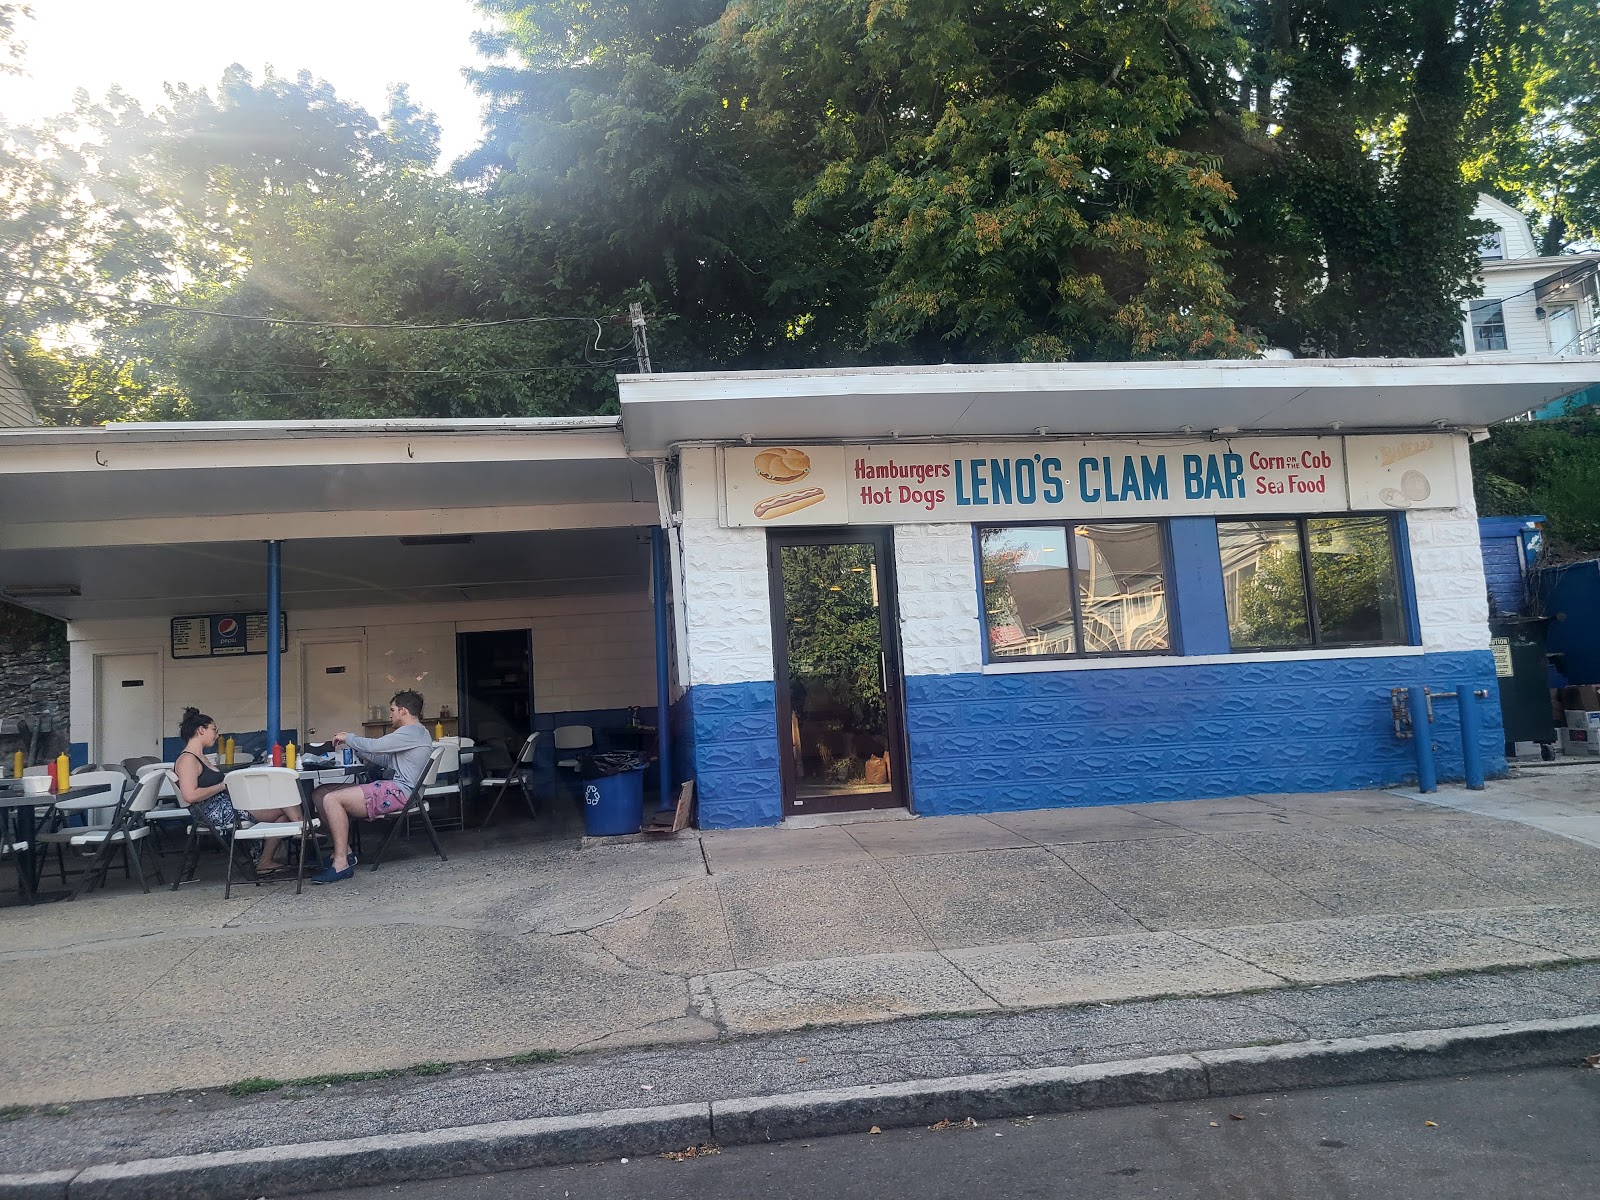 Lenos Clam Bar